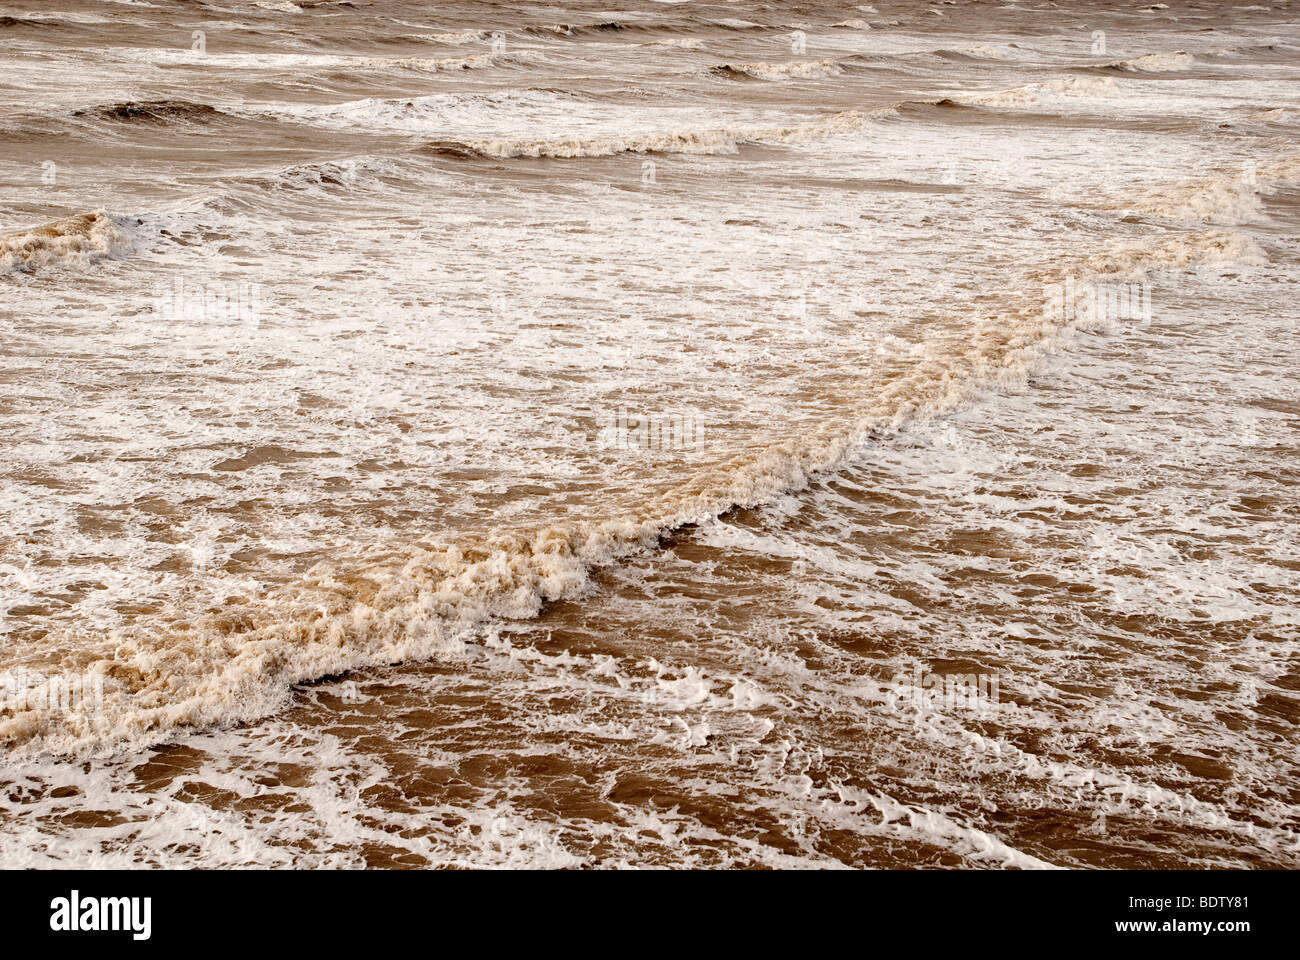 Stormy seas. Stock Photo